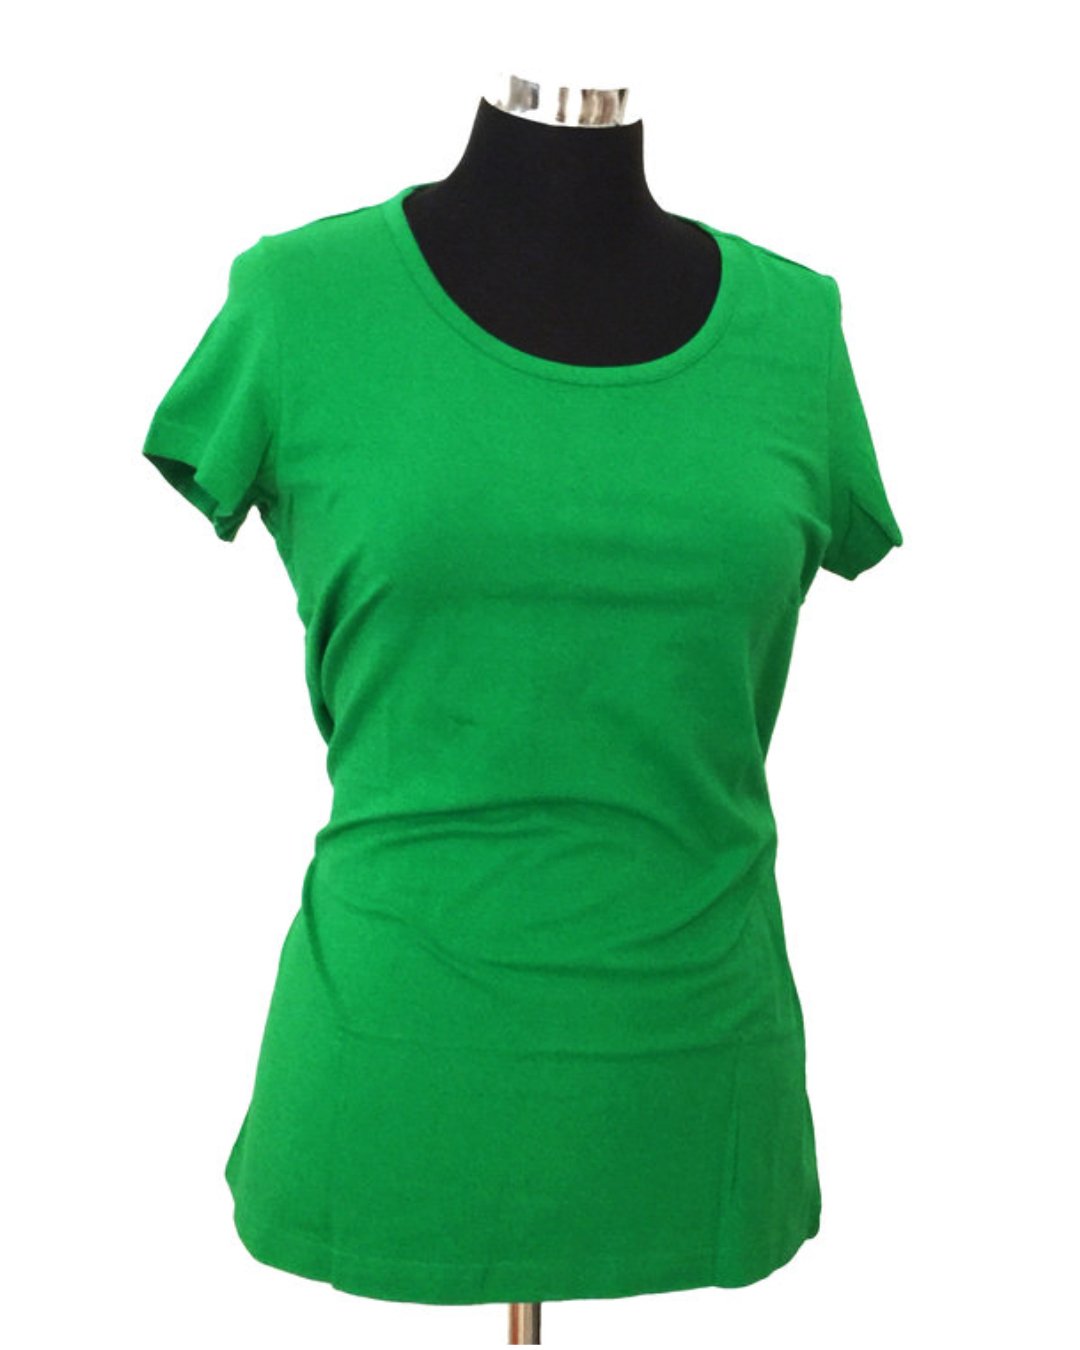 Grünes T-Shirt für Damen von DUNS Sweden aus Biobaumwolle